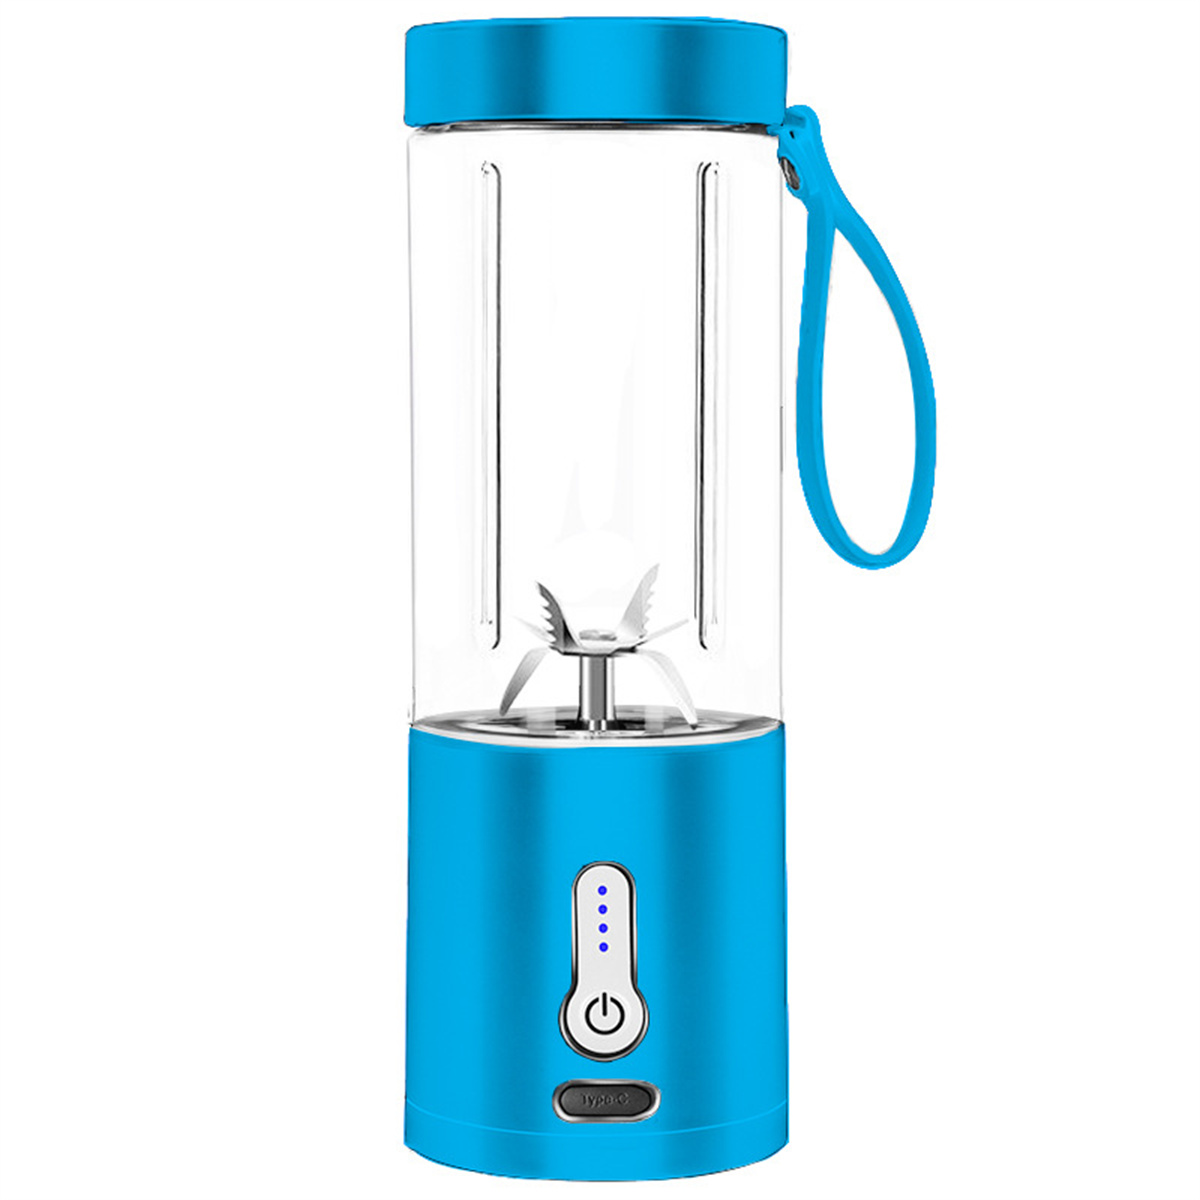 SYNTEK Juice blau Entsafter, Fruchtkocher Tragbarer Handkurbel-Entsafter Blue Mug Mixer elektrischer